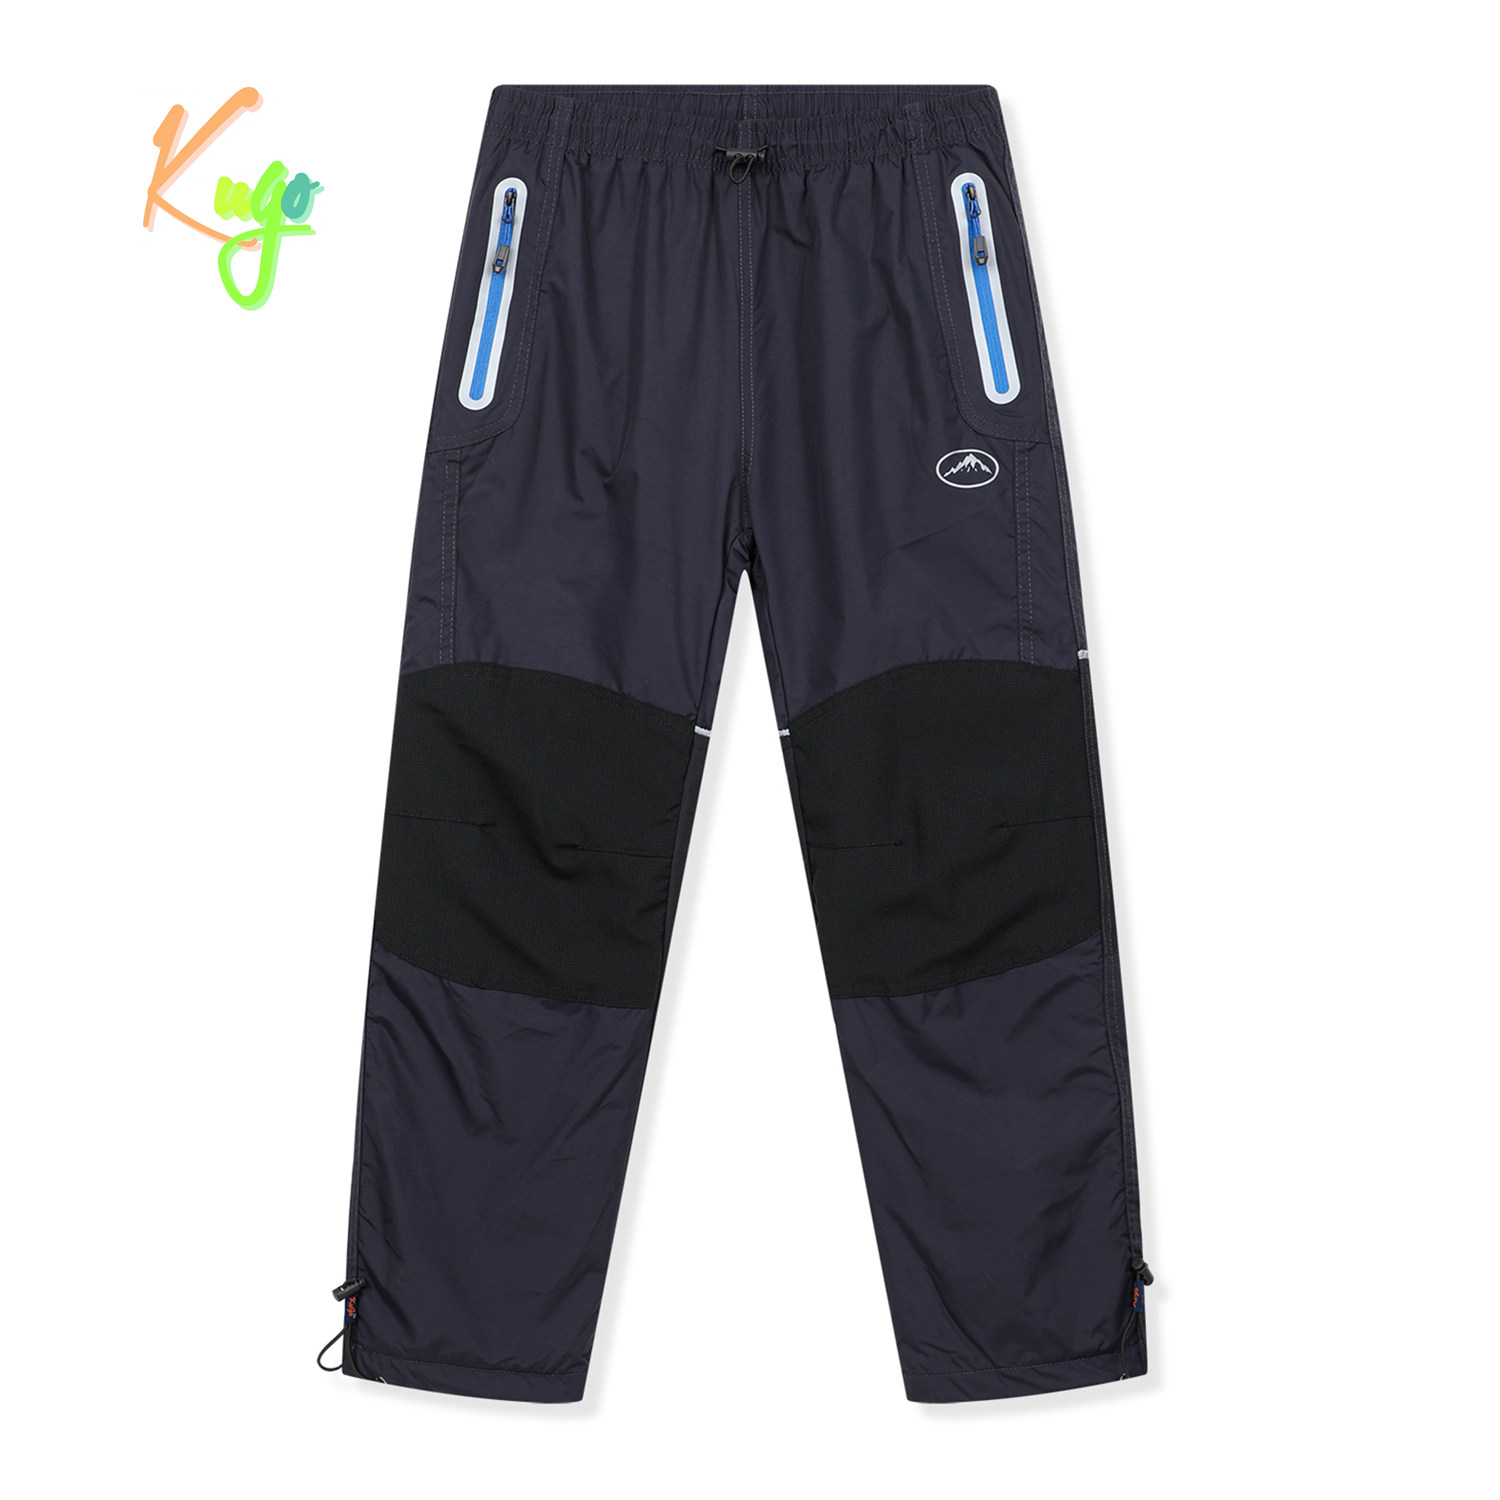 Chlapecké šusťákové kalhoty, zateplené - KUGO DK8237, šedomodrá / modré zipy Barva: Šedá, Velikost: 134